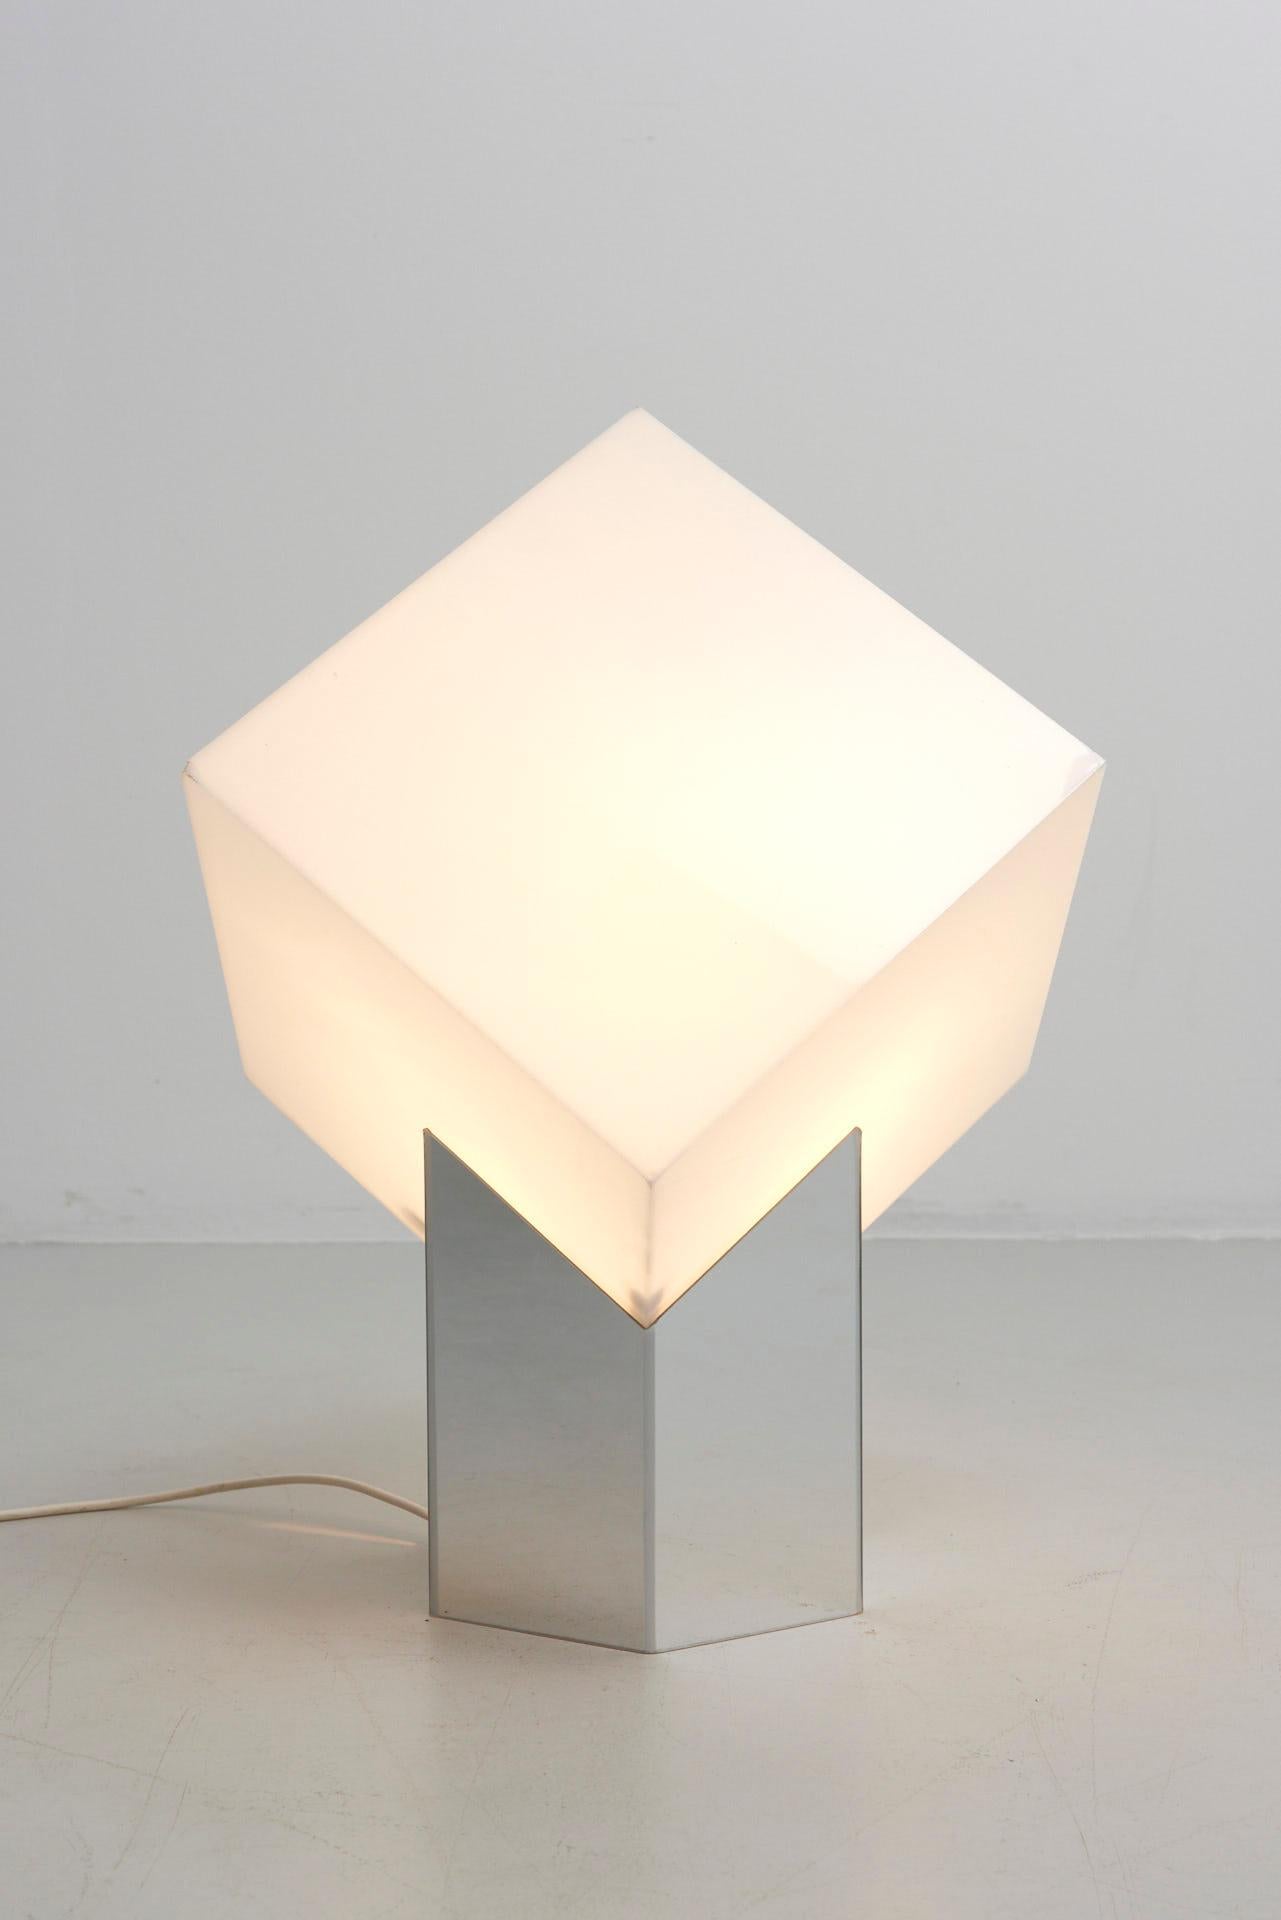 Dutch Cube Light by RAAK by Paul Driessen